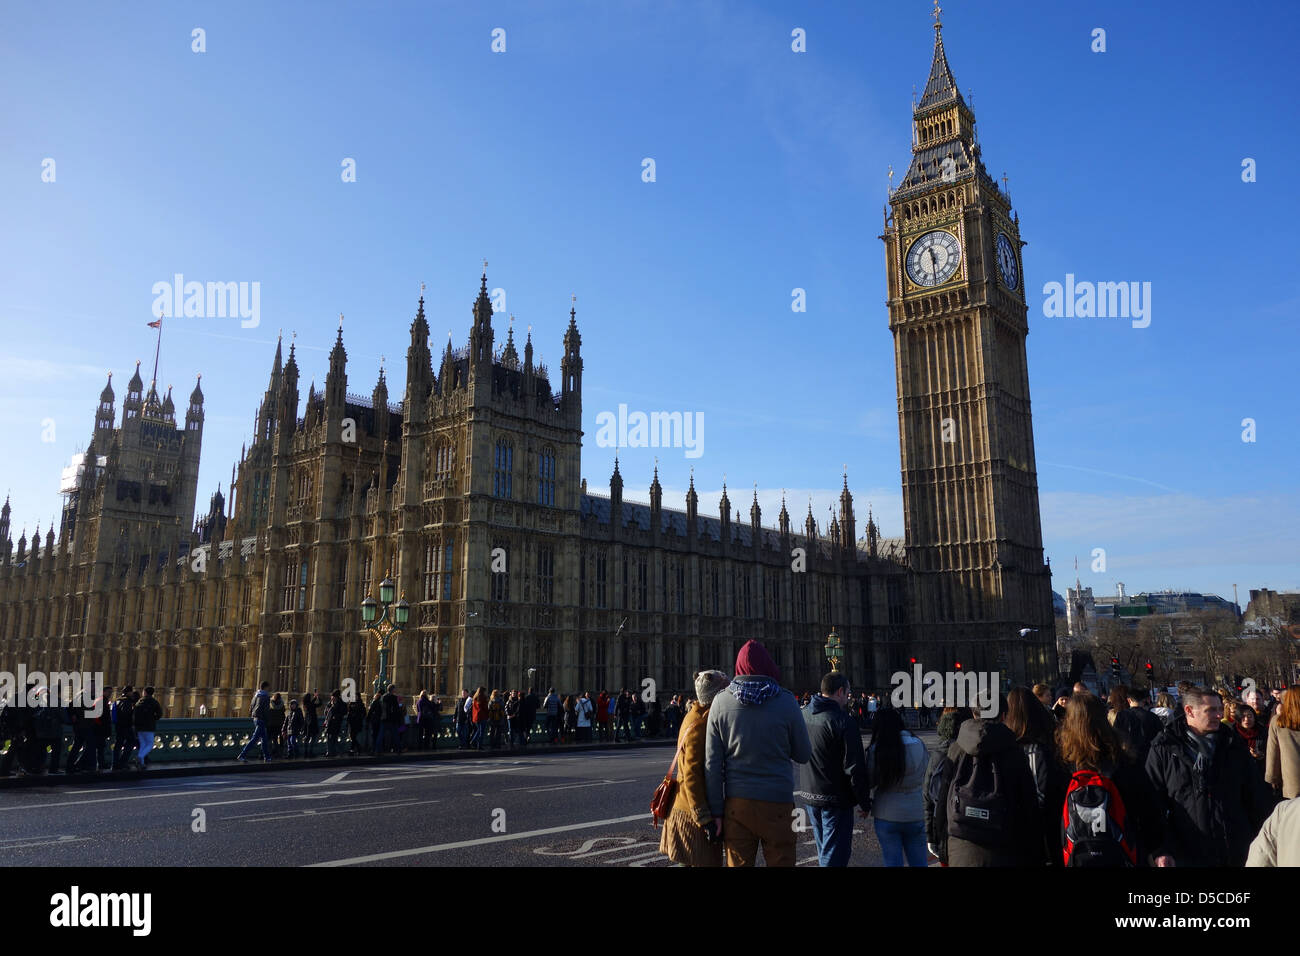 Las casas del parlamento y el Big Ben, Westminster, Londres, Reino Unido de Gran Bretaña Foto de stock